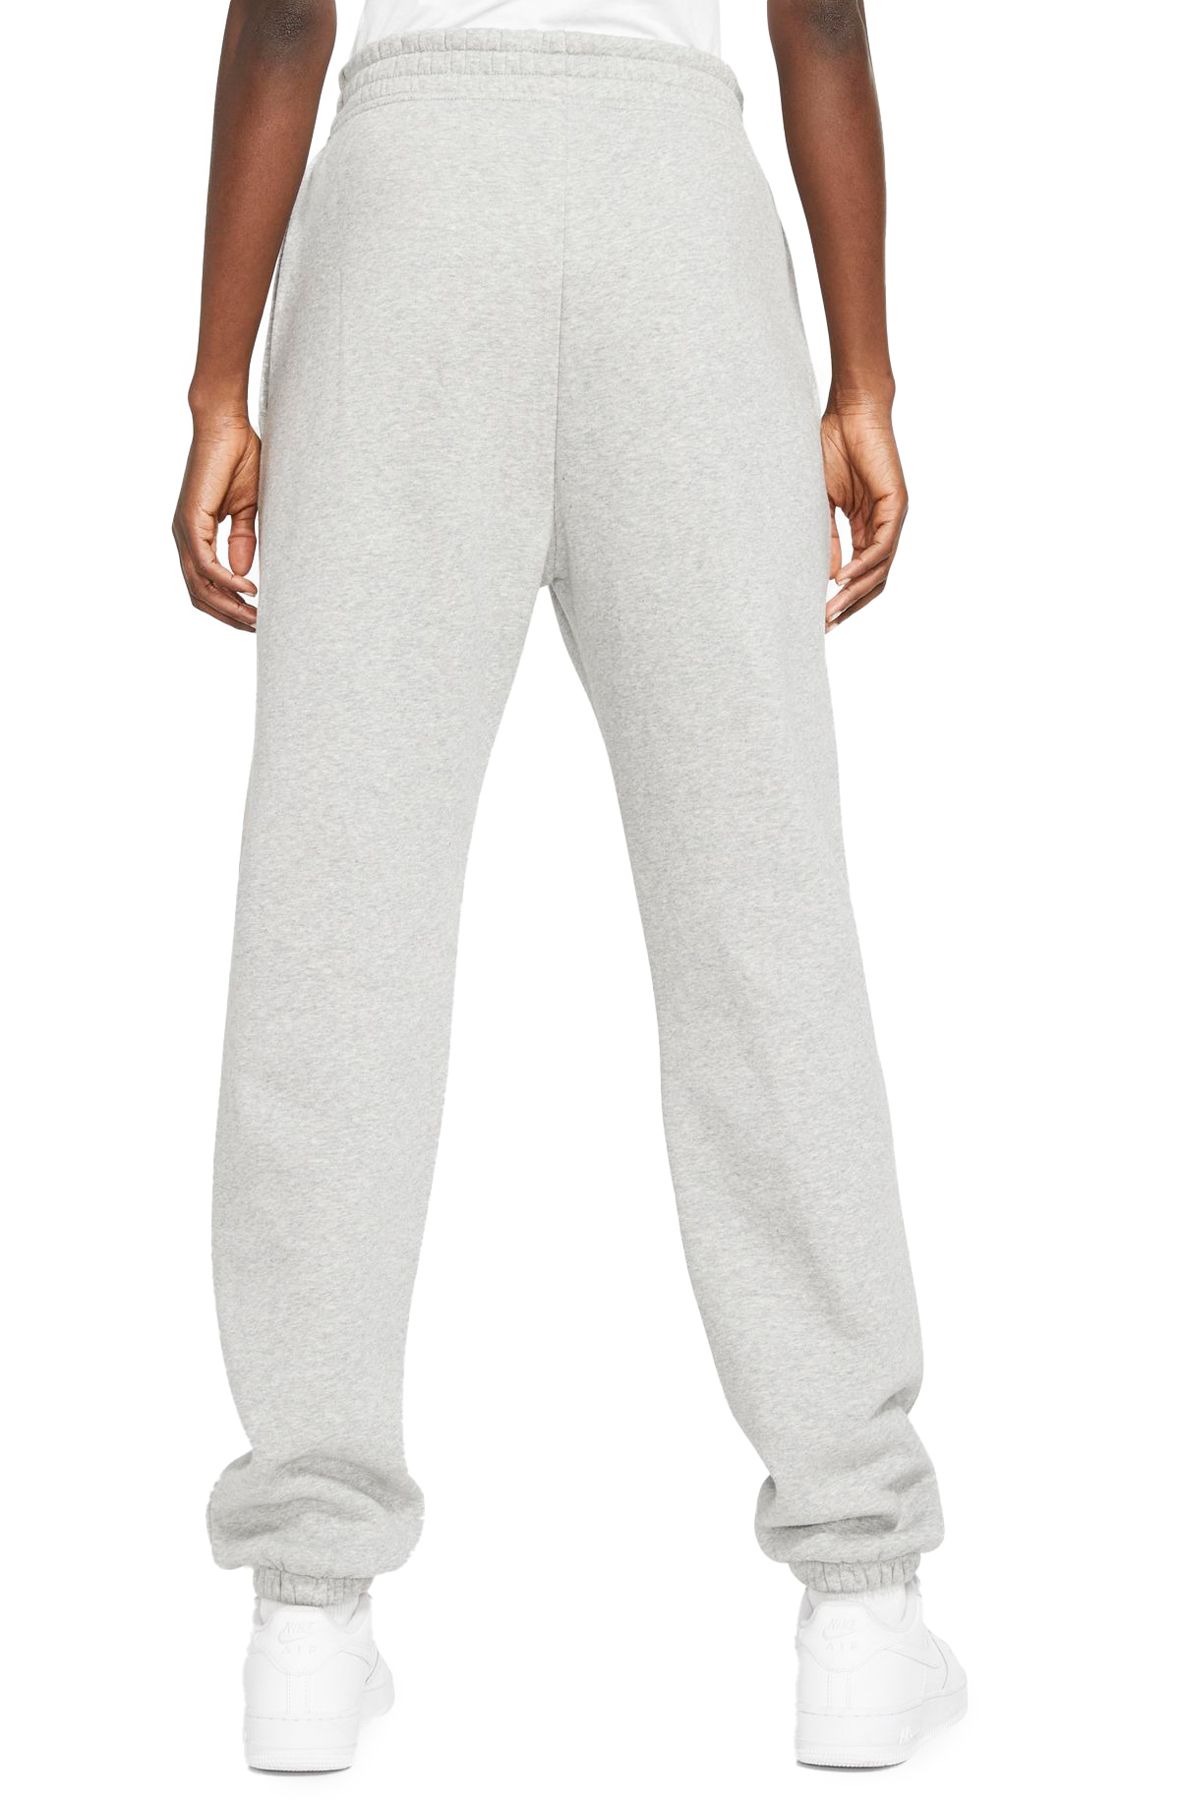 🆕 NIKE Women's Sportswear Essential Fleece BV4095-063 Grey/White (Sz: L)  🔥